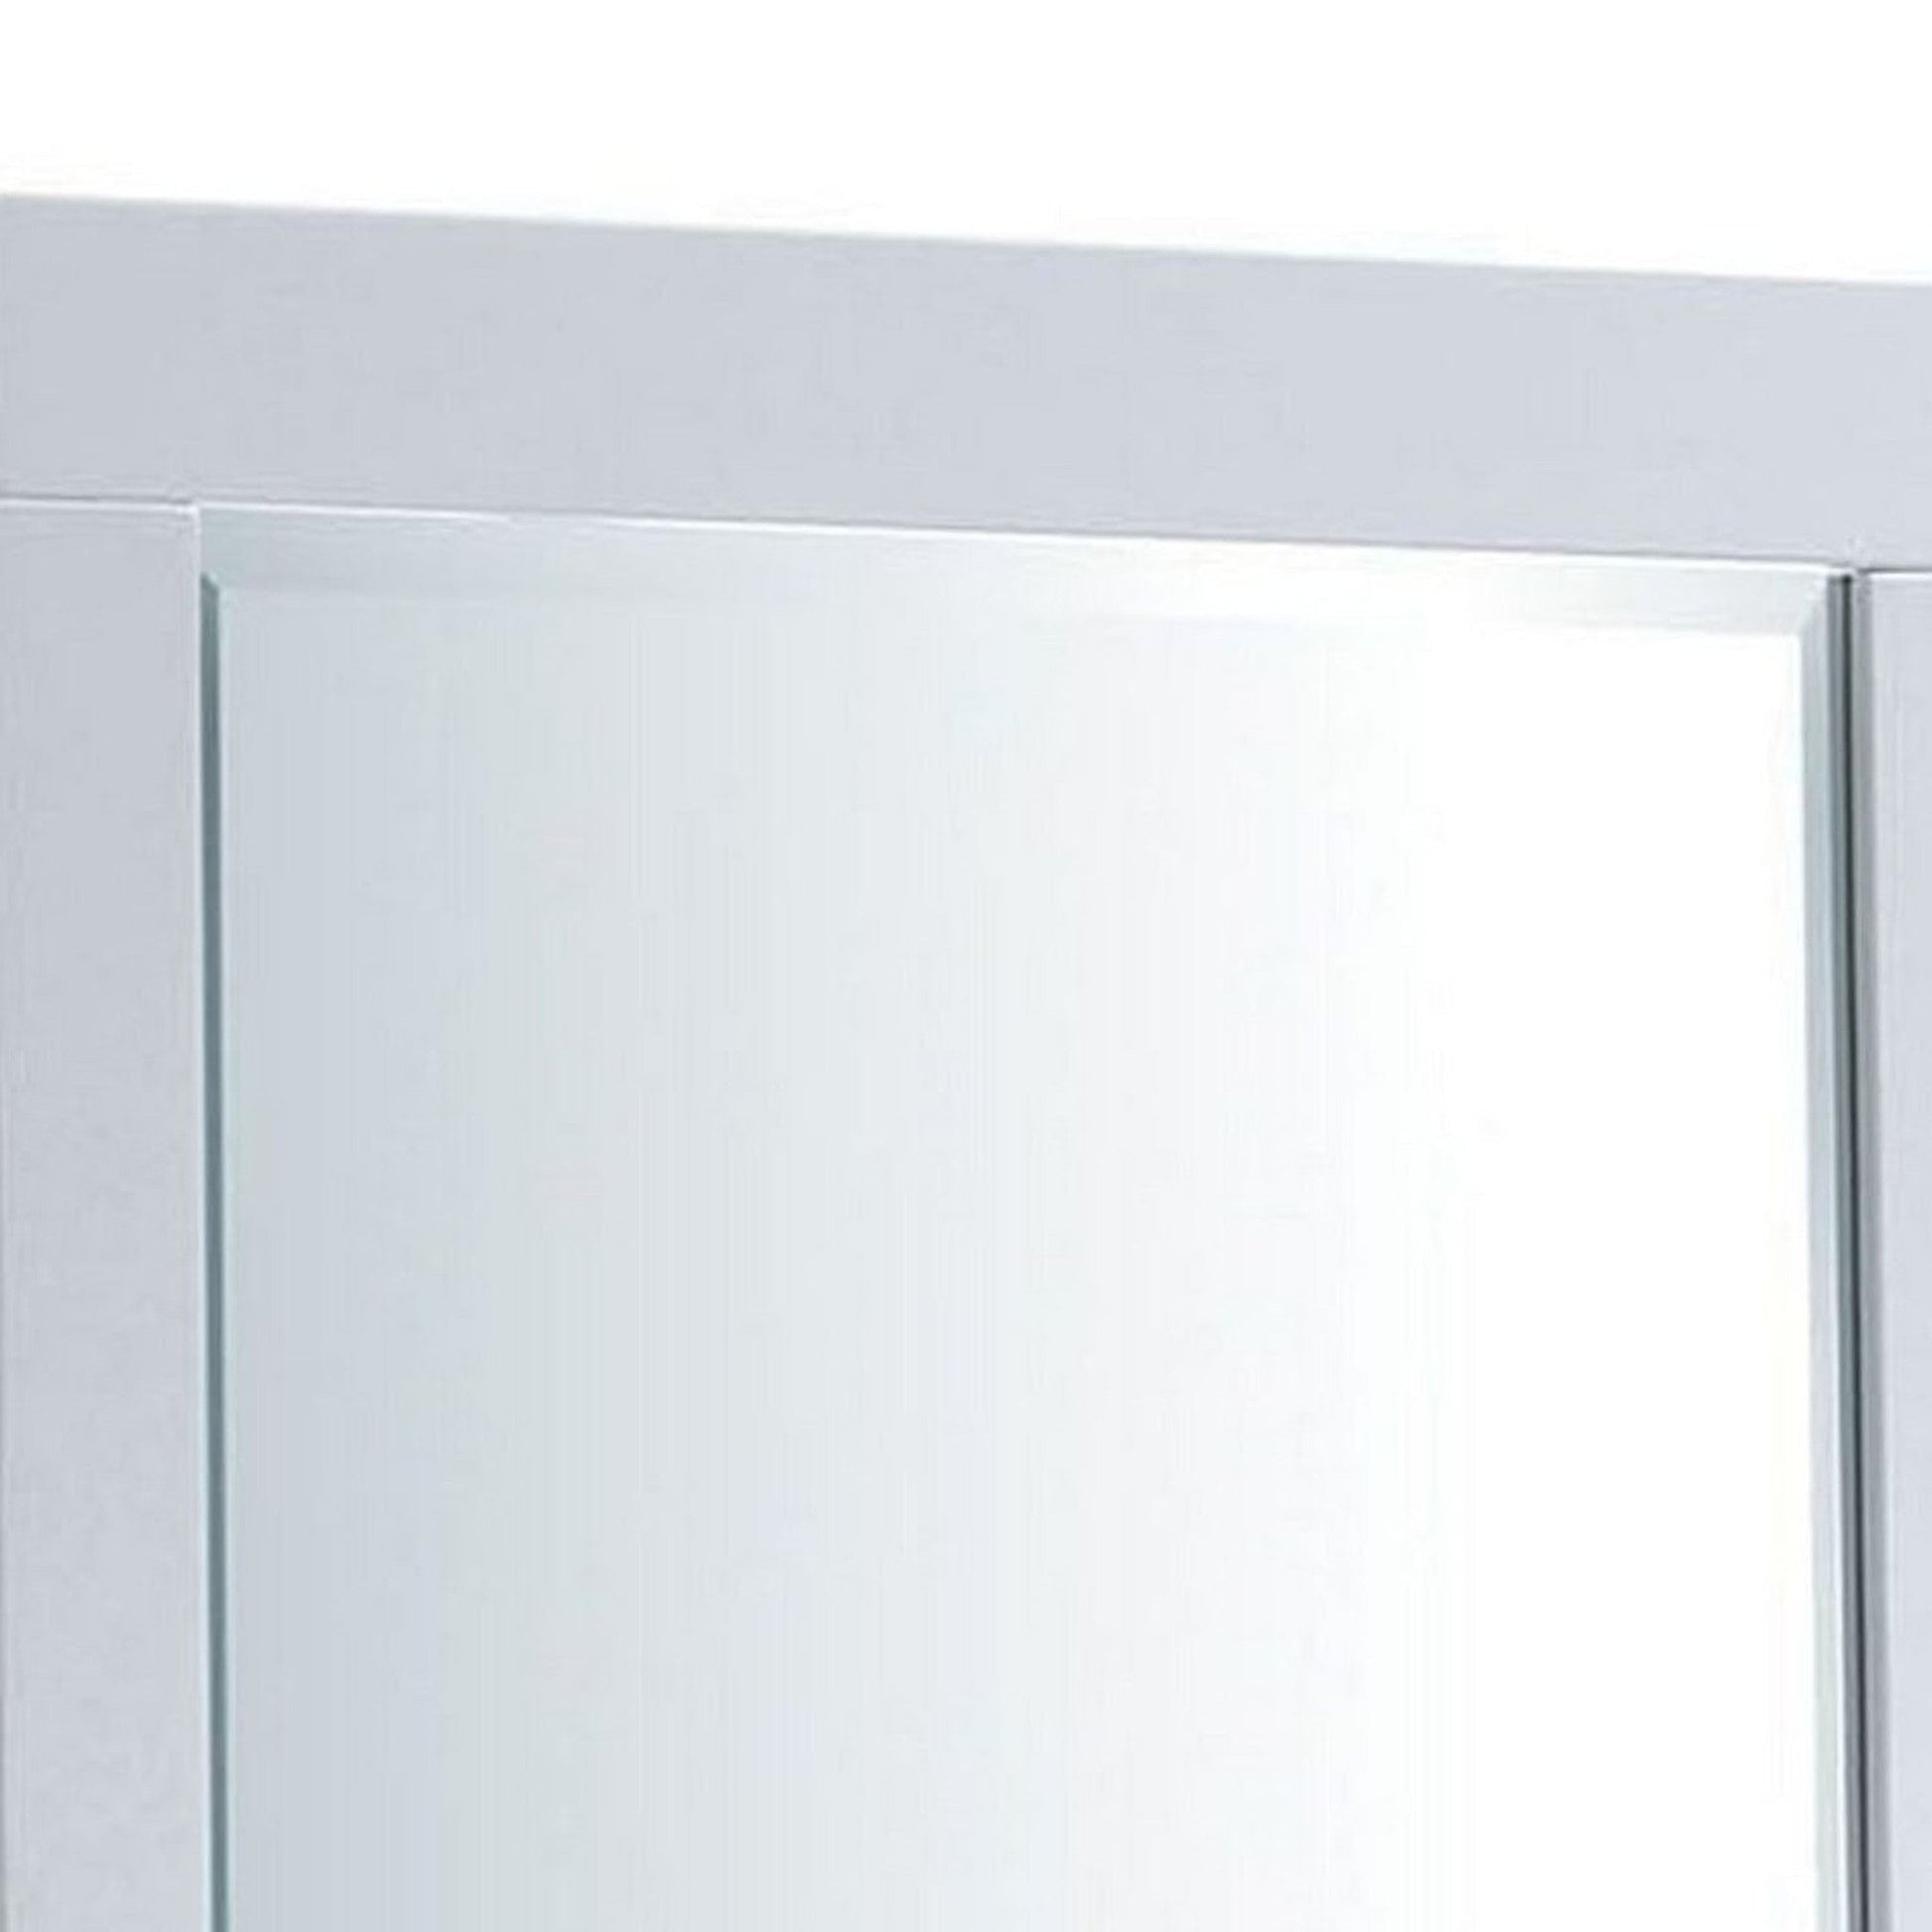 Benzara 27" White Rectangular Contemporary Wooden Frame Mirror